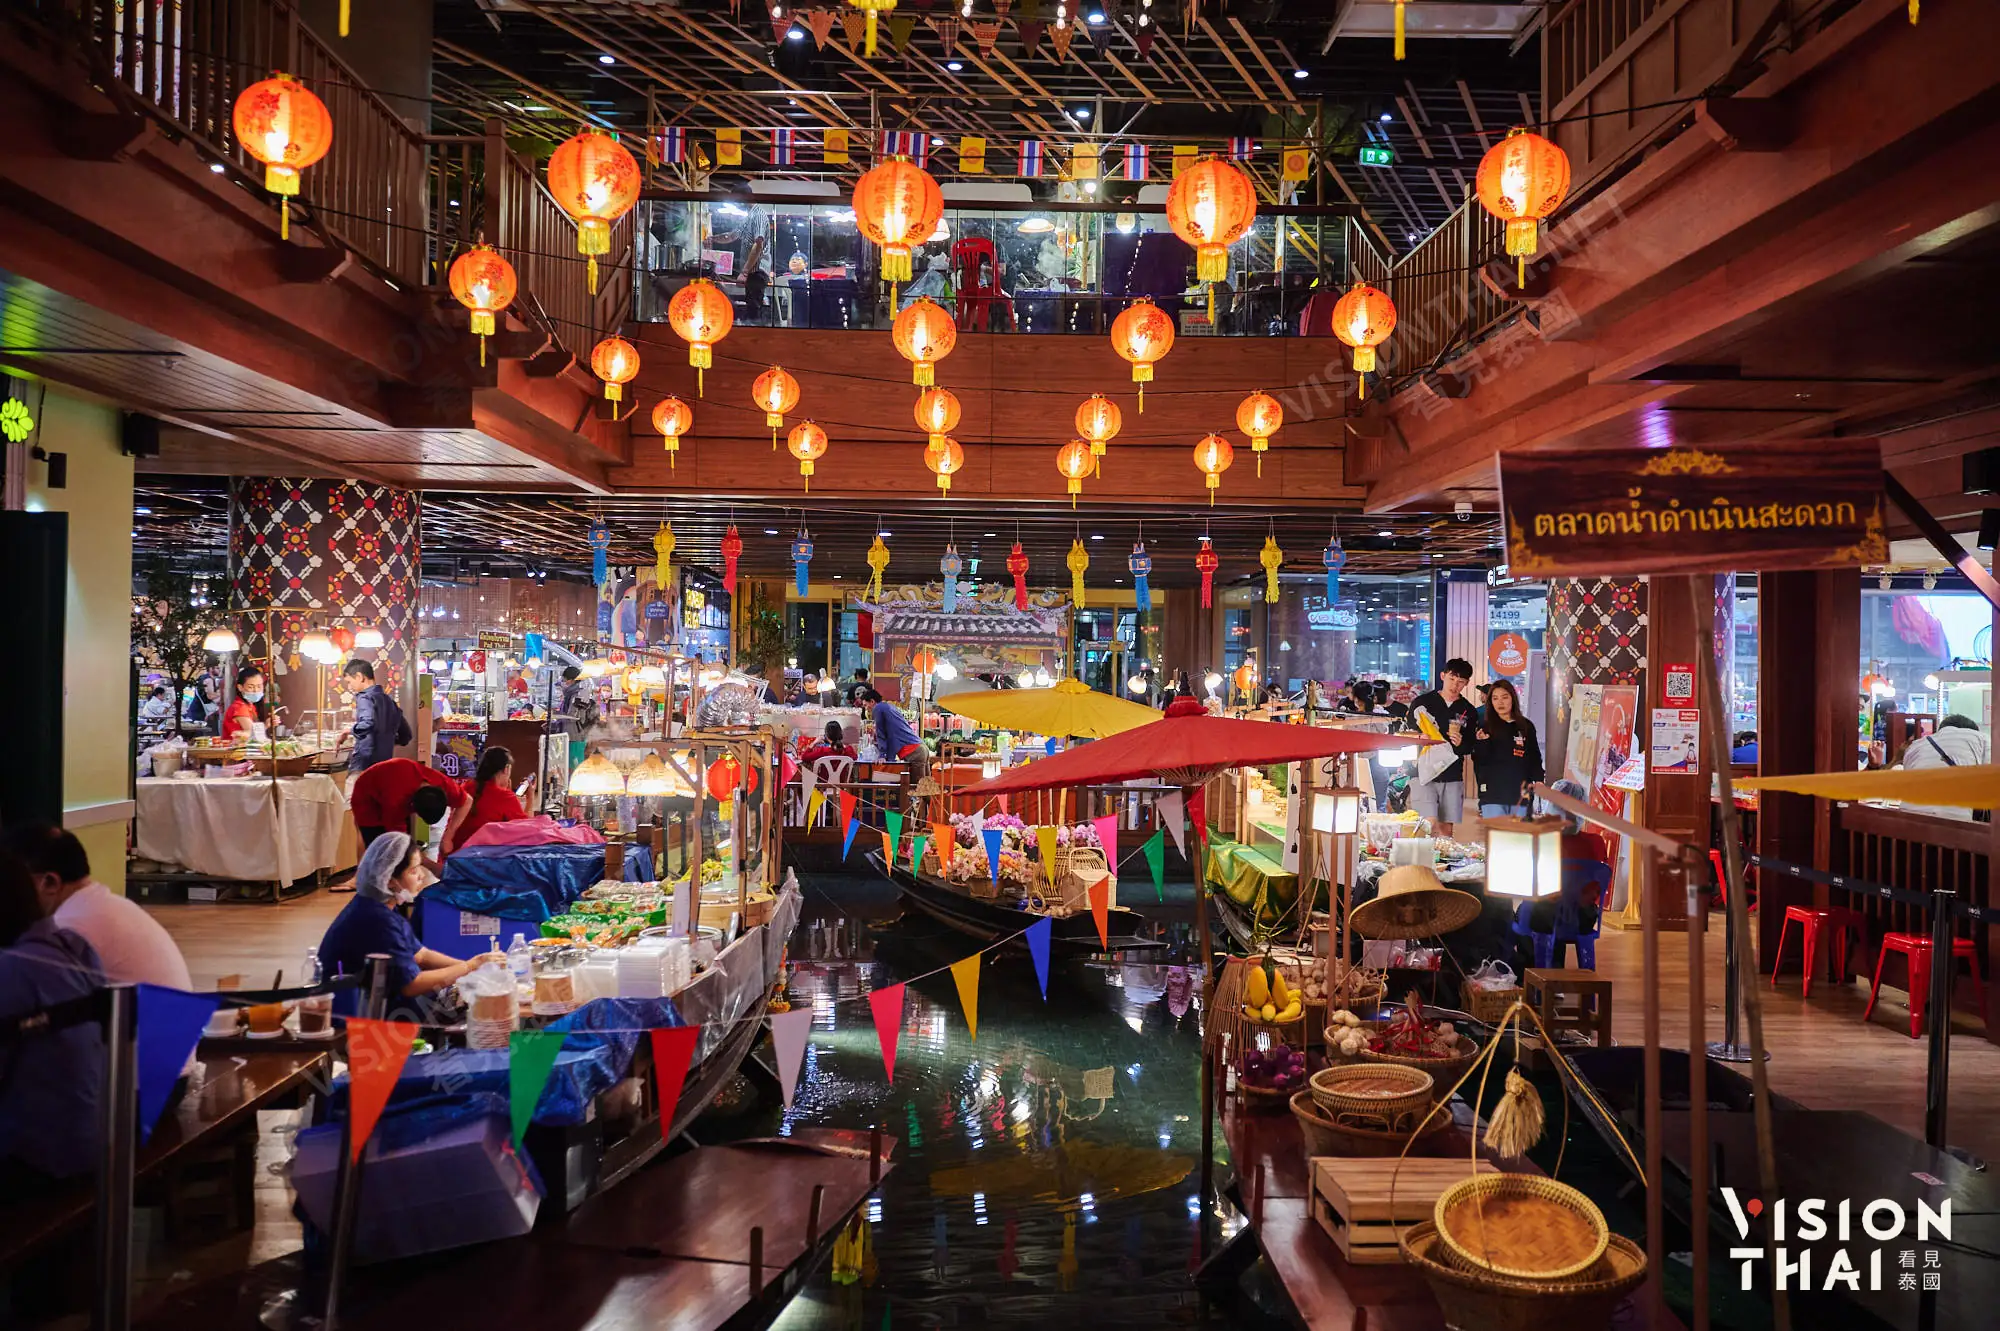 “暹罗乐城SOOKSIAM”也挂上迎春灯笼，打造迎春美食市集（Vision Thai 看见泰国）